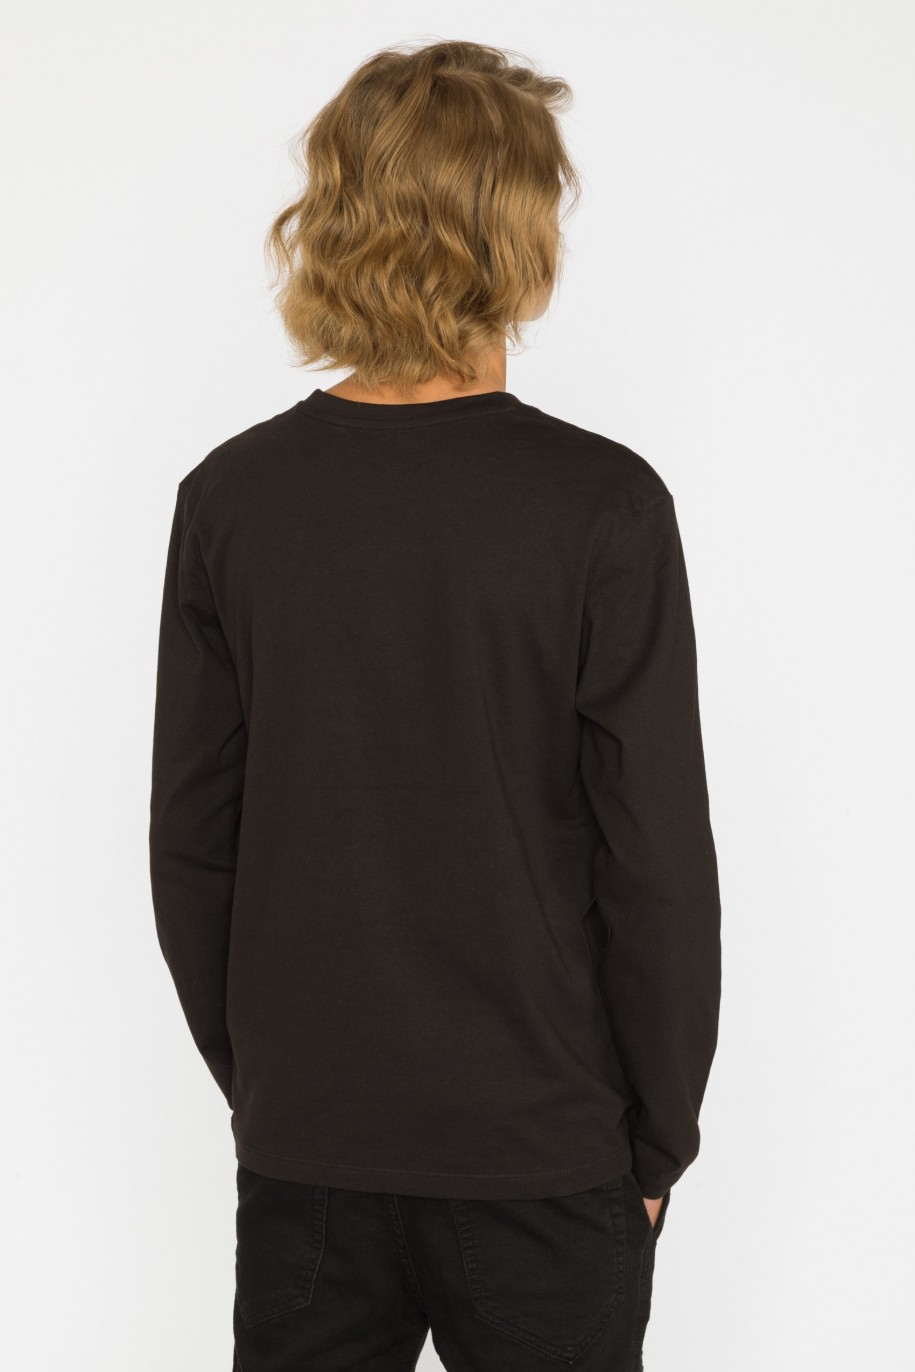 Czarny t-shirt dla chłopaka z długim rękawem SKELETON - 31498